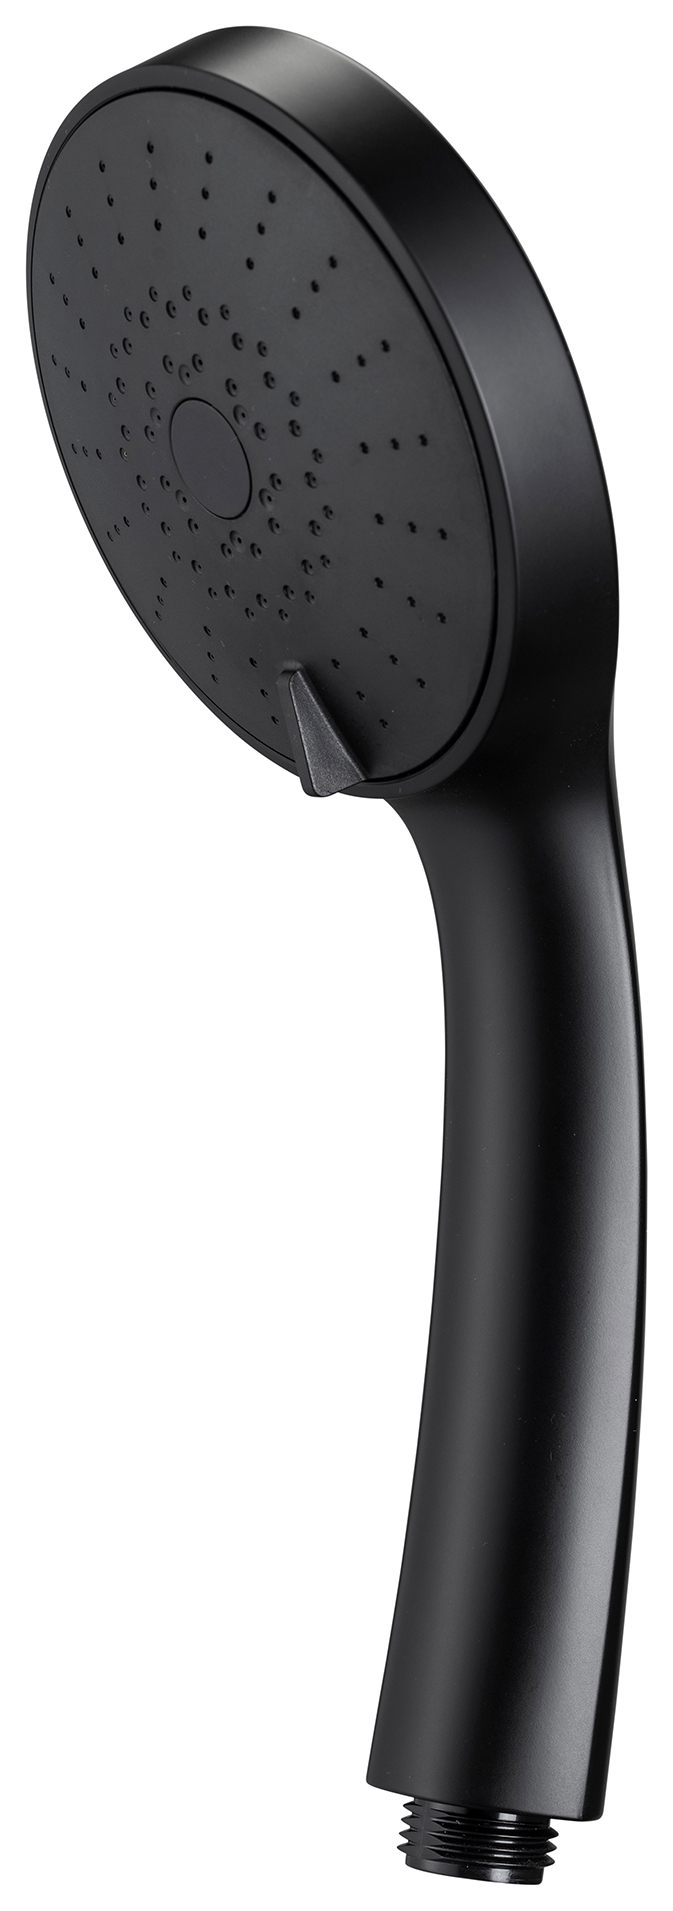 Croydex Presion Pressure Boost 5 Function Shower Handset - Matt Black